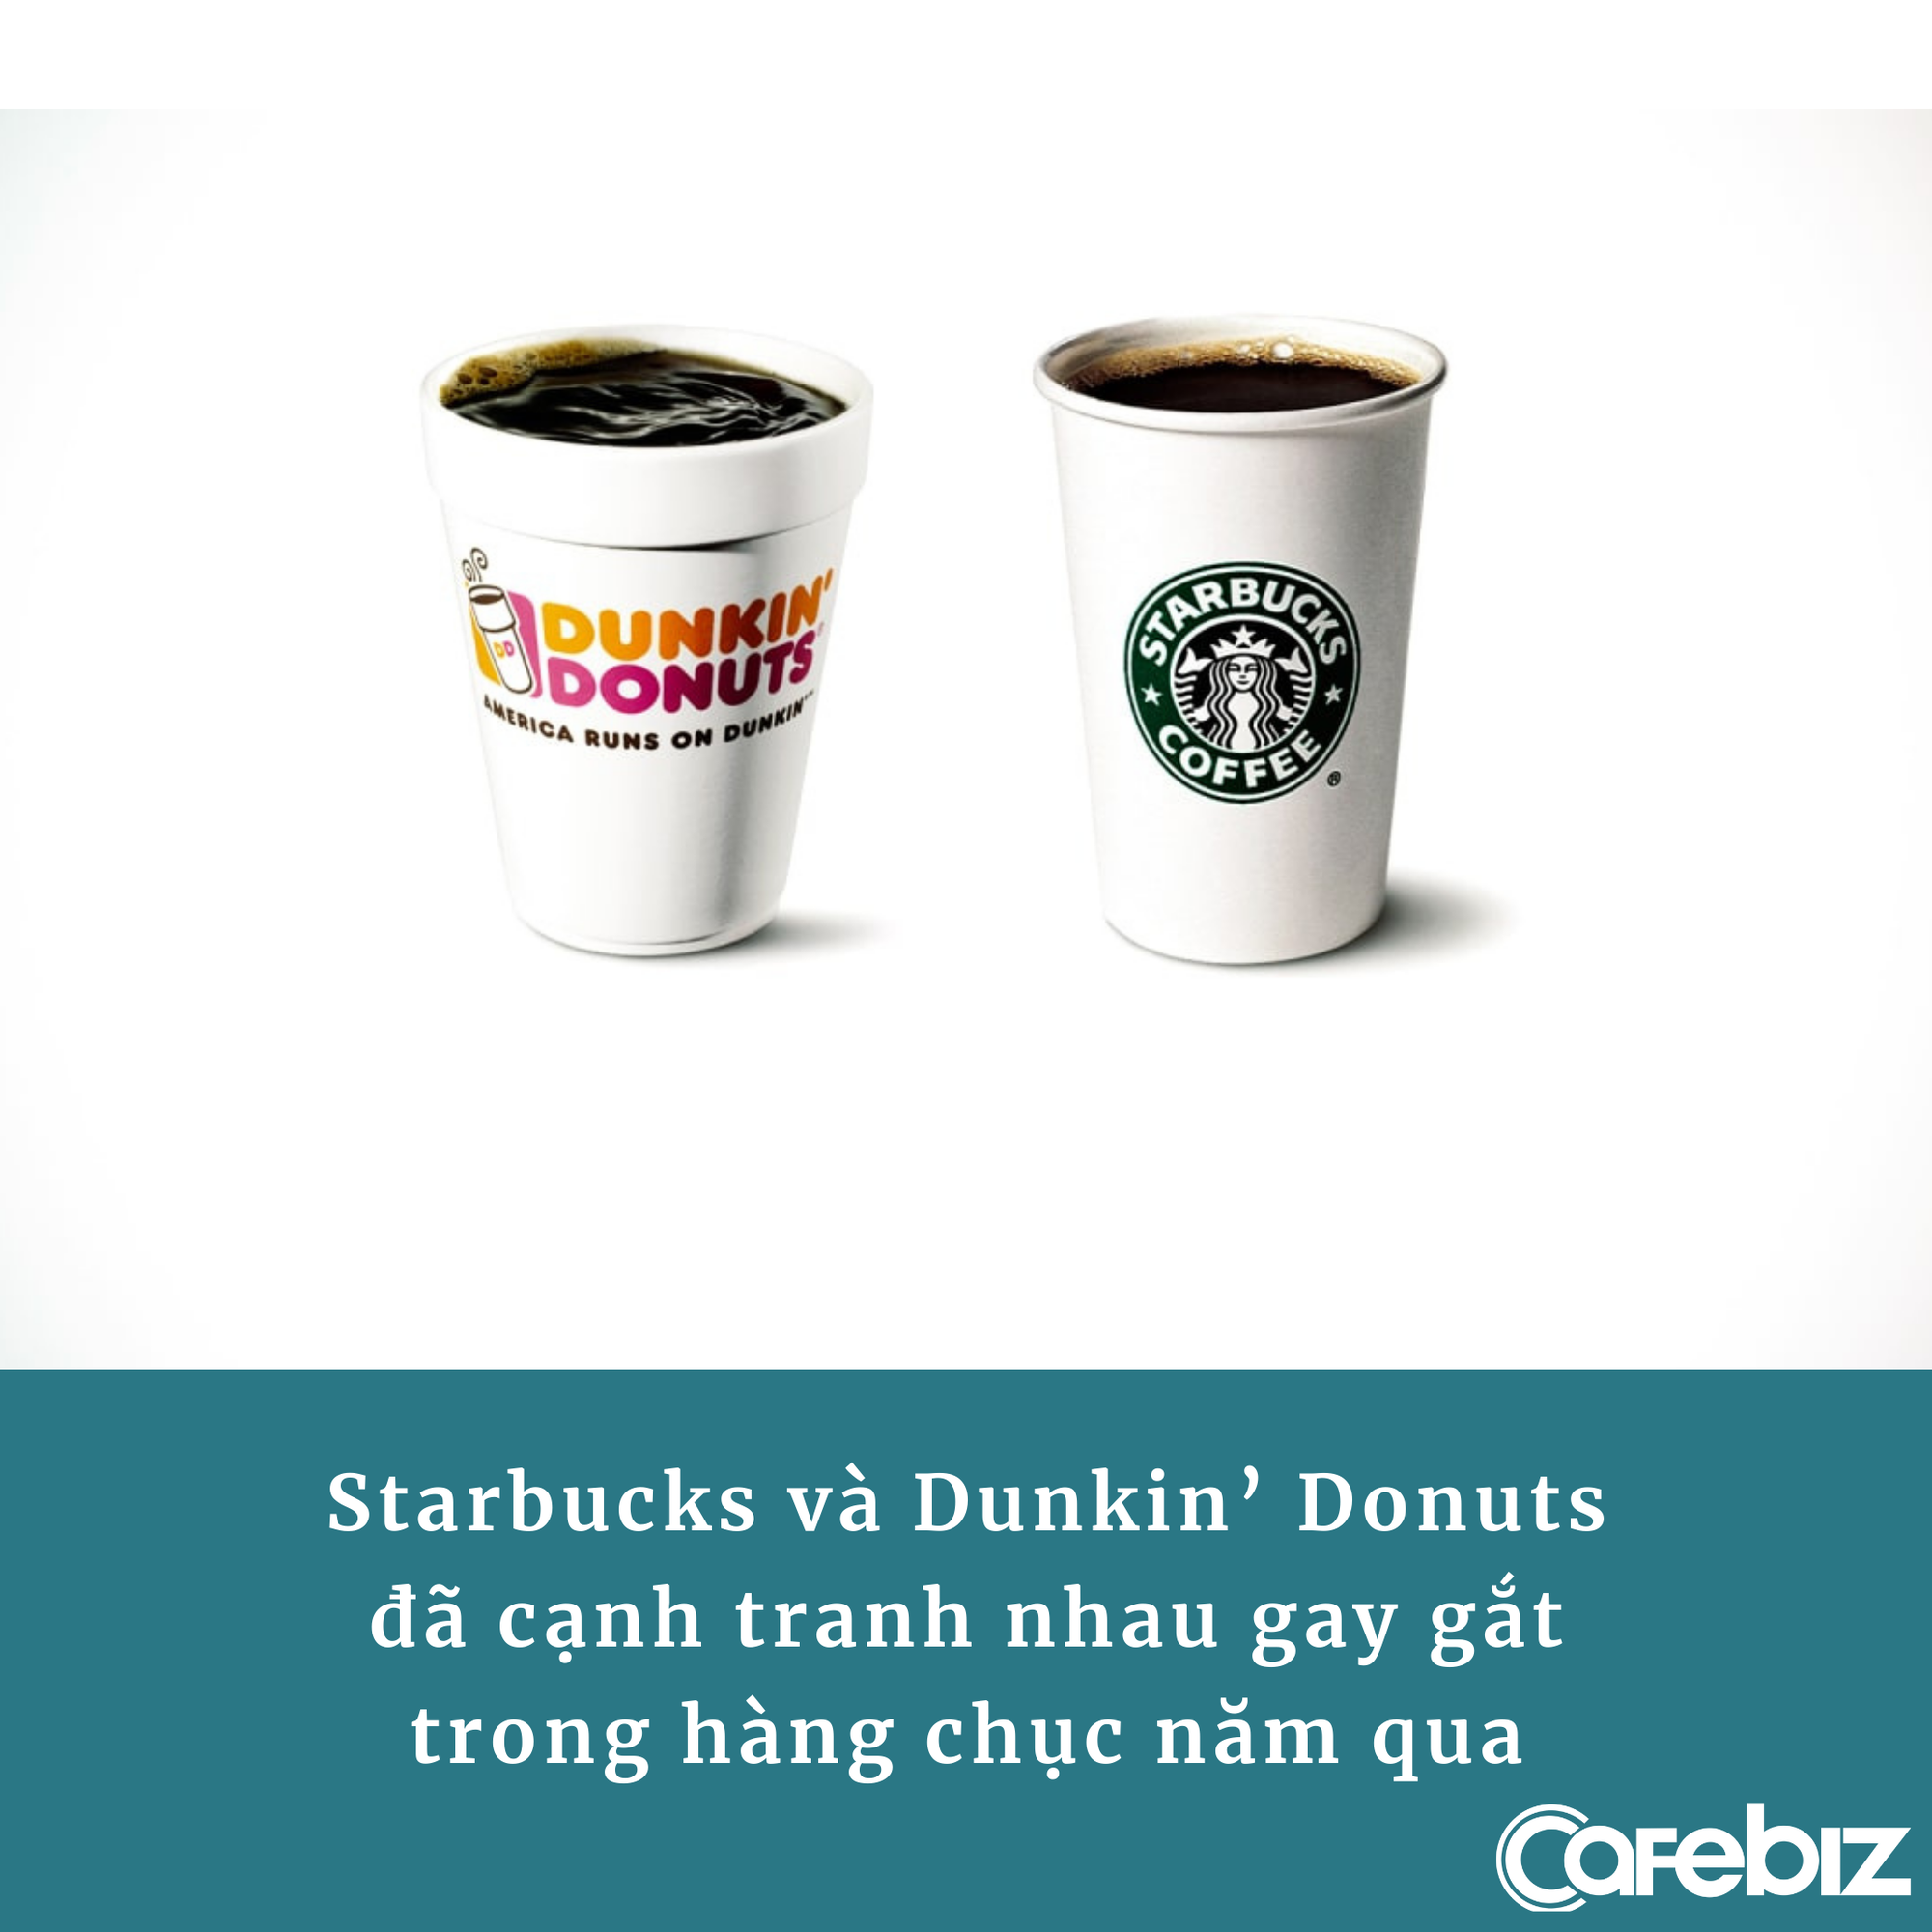 [Bài 23/9] Đại chiến Starbucks vs Dunkin’ Donuts: 1 hãng ‘sinh sau đẻ muộn’ nhưng vượt mặt đàn anh, cả 2 làm marketing không quên cà khịa nhau cực ‘khét’ - Ảnh 1.